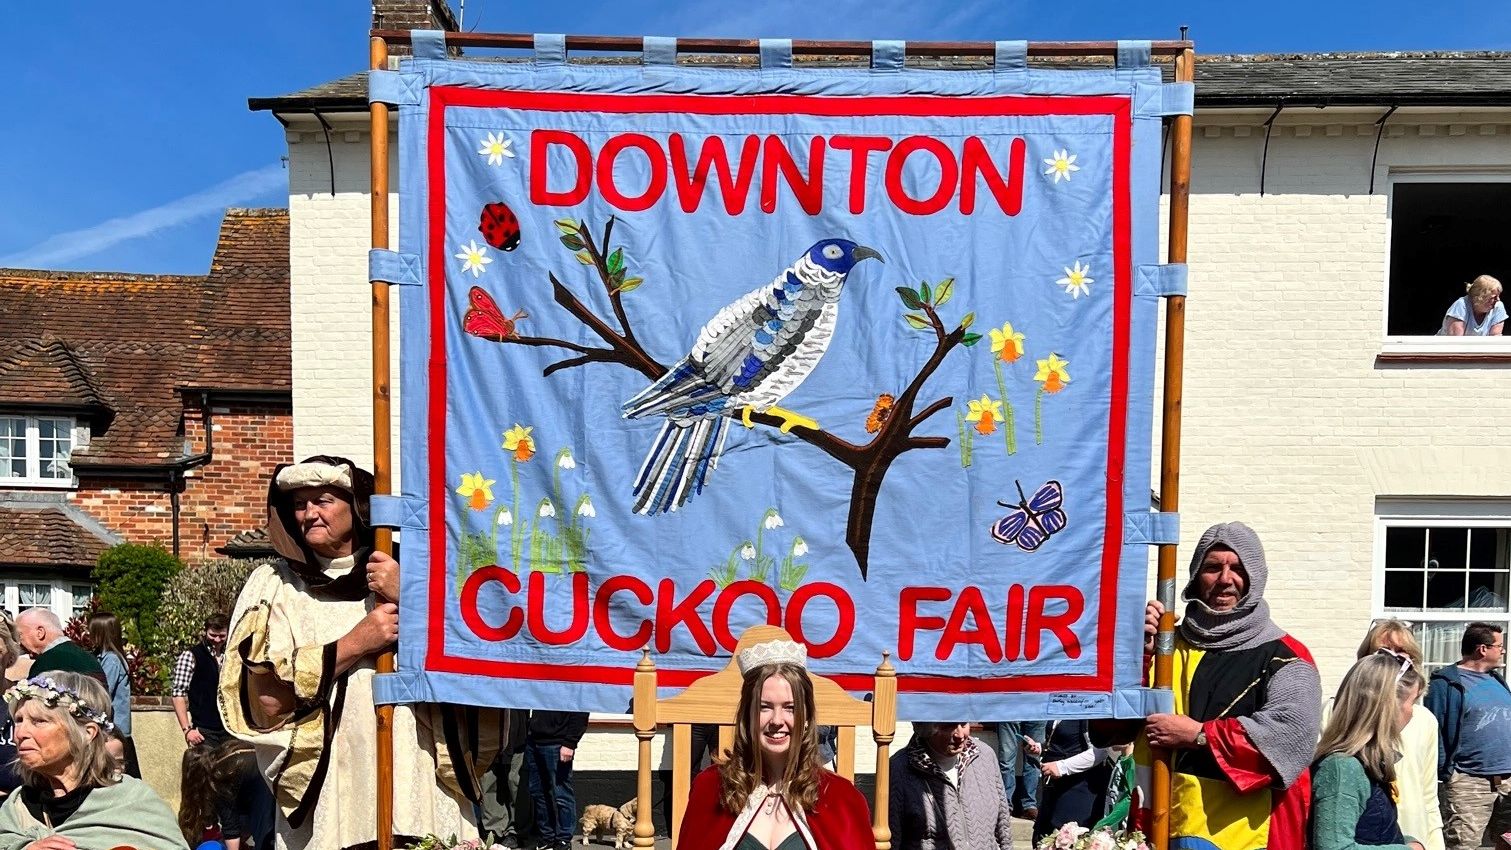 Downton set for this year’s Cuckoo Fair GHR Salisbury